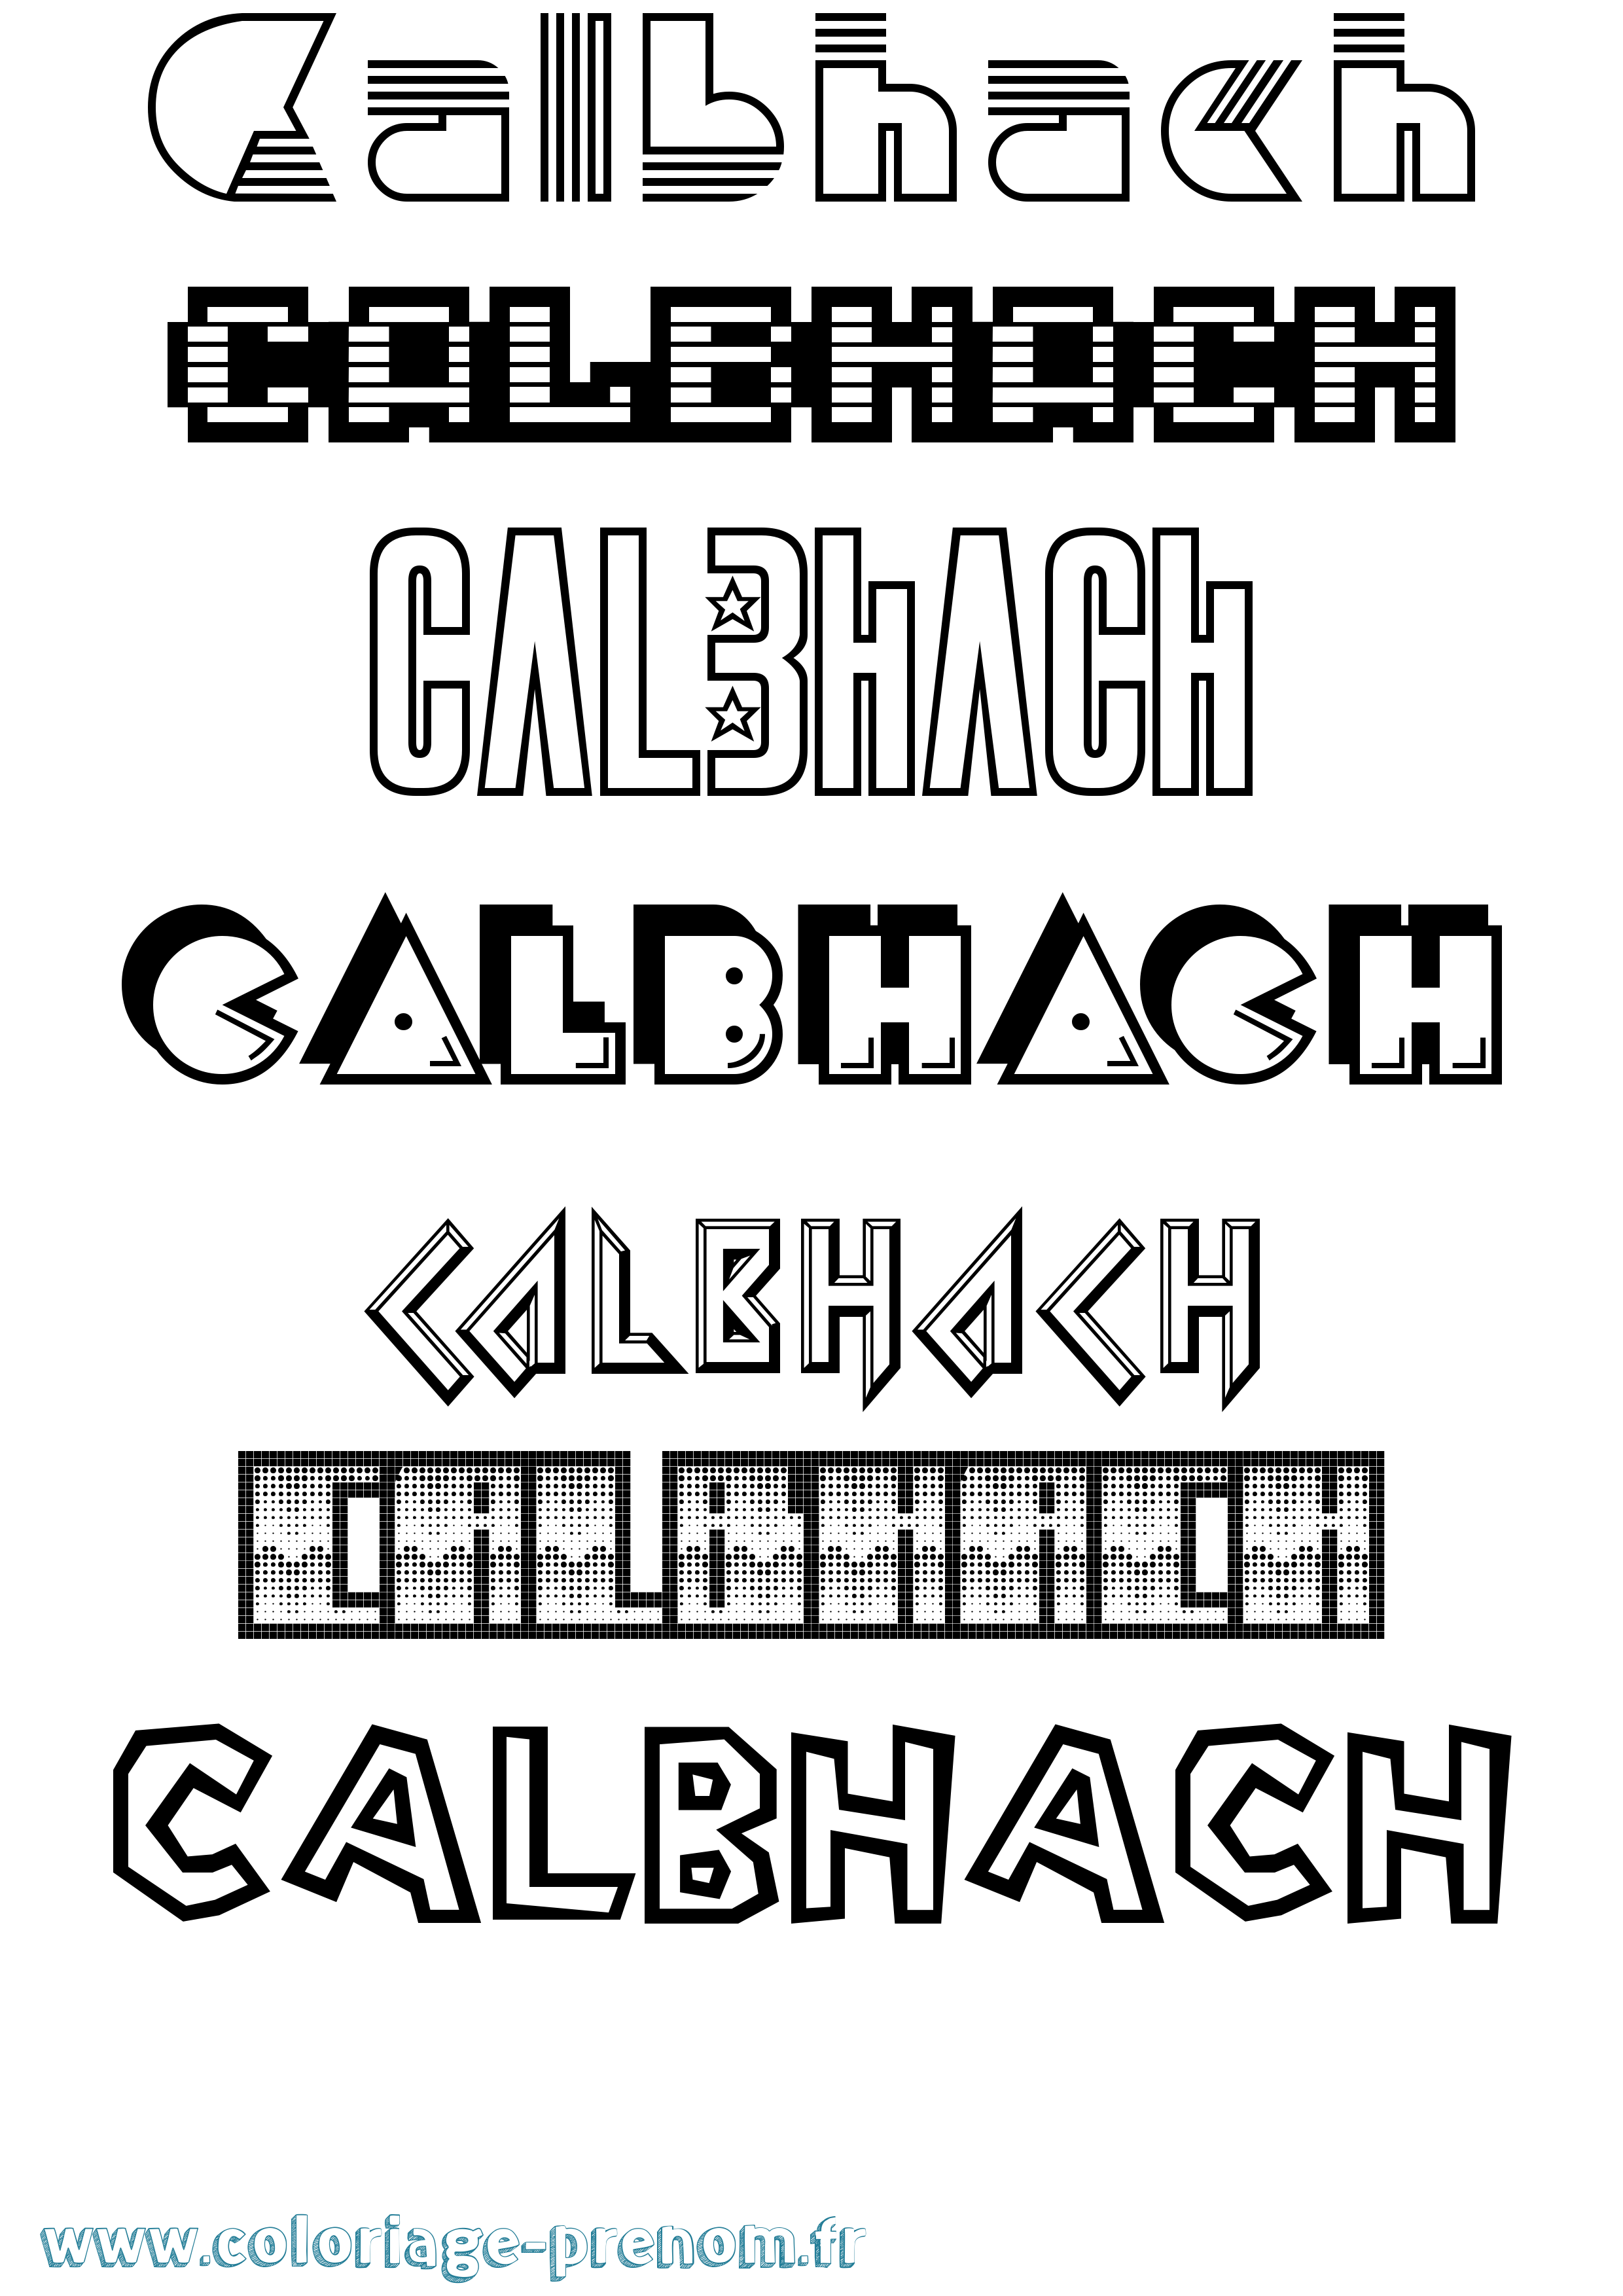 Coloriage prénom Calbhach Jeux Vidéos